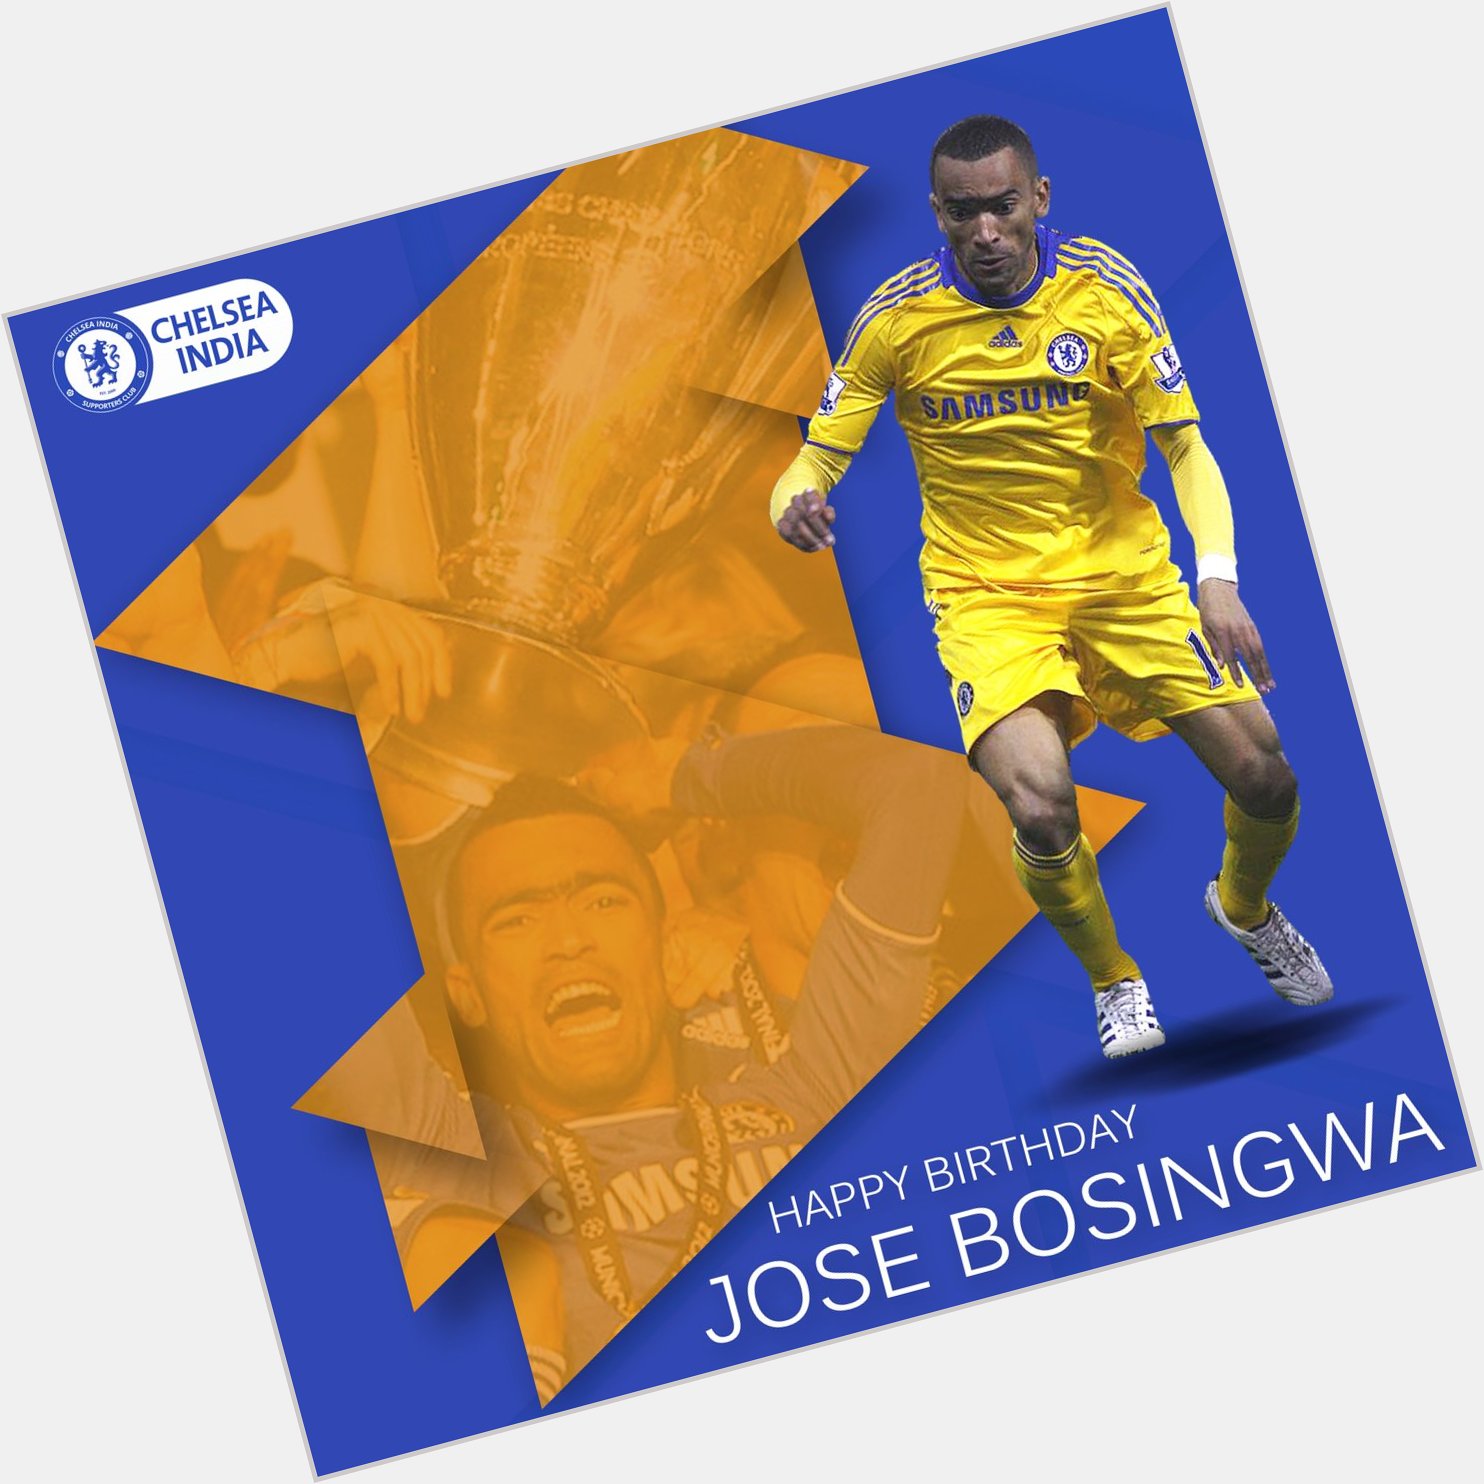 Happy Birthday to former Blue & winner Jose bosingwa, who turns 38  